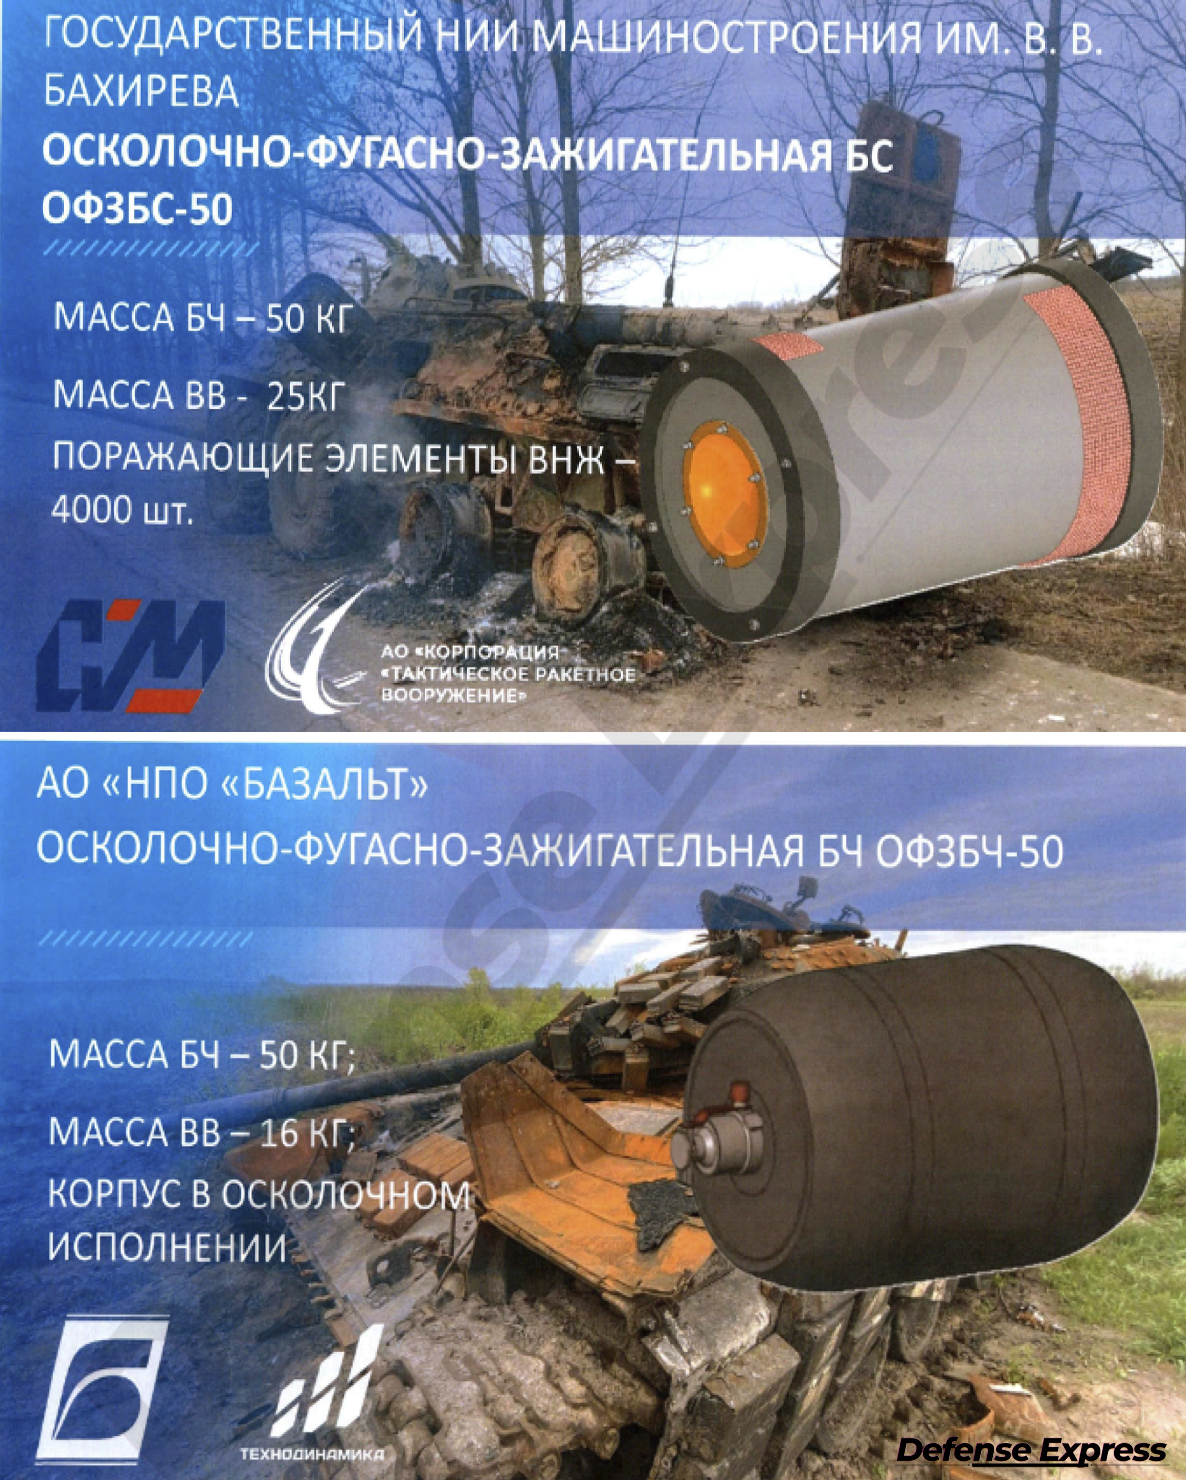 Đầu đạn 50 kg mới dành cho Shahed-136 / Defense Express / Đầu đạn 90 kg mới của Shahed-136 và những phát hiện khác về Rò rỉ dữ liệu Alabuga